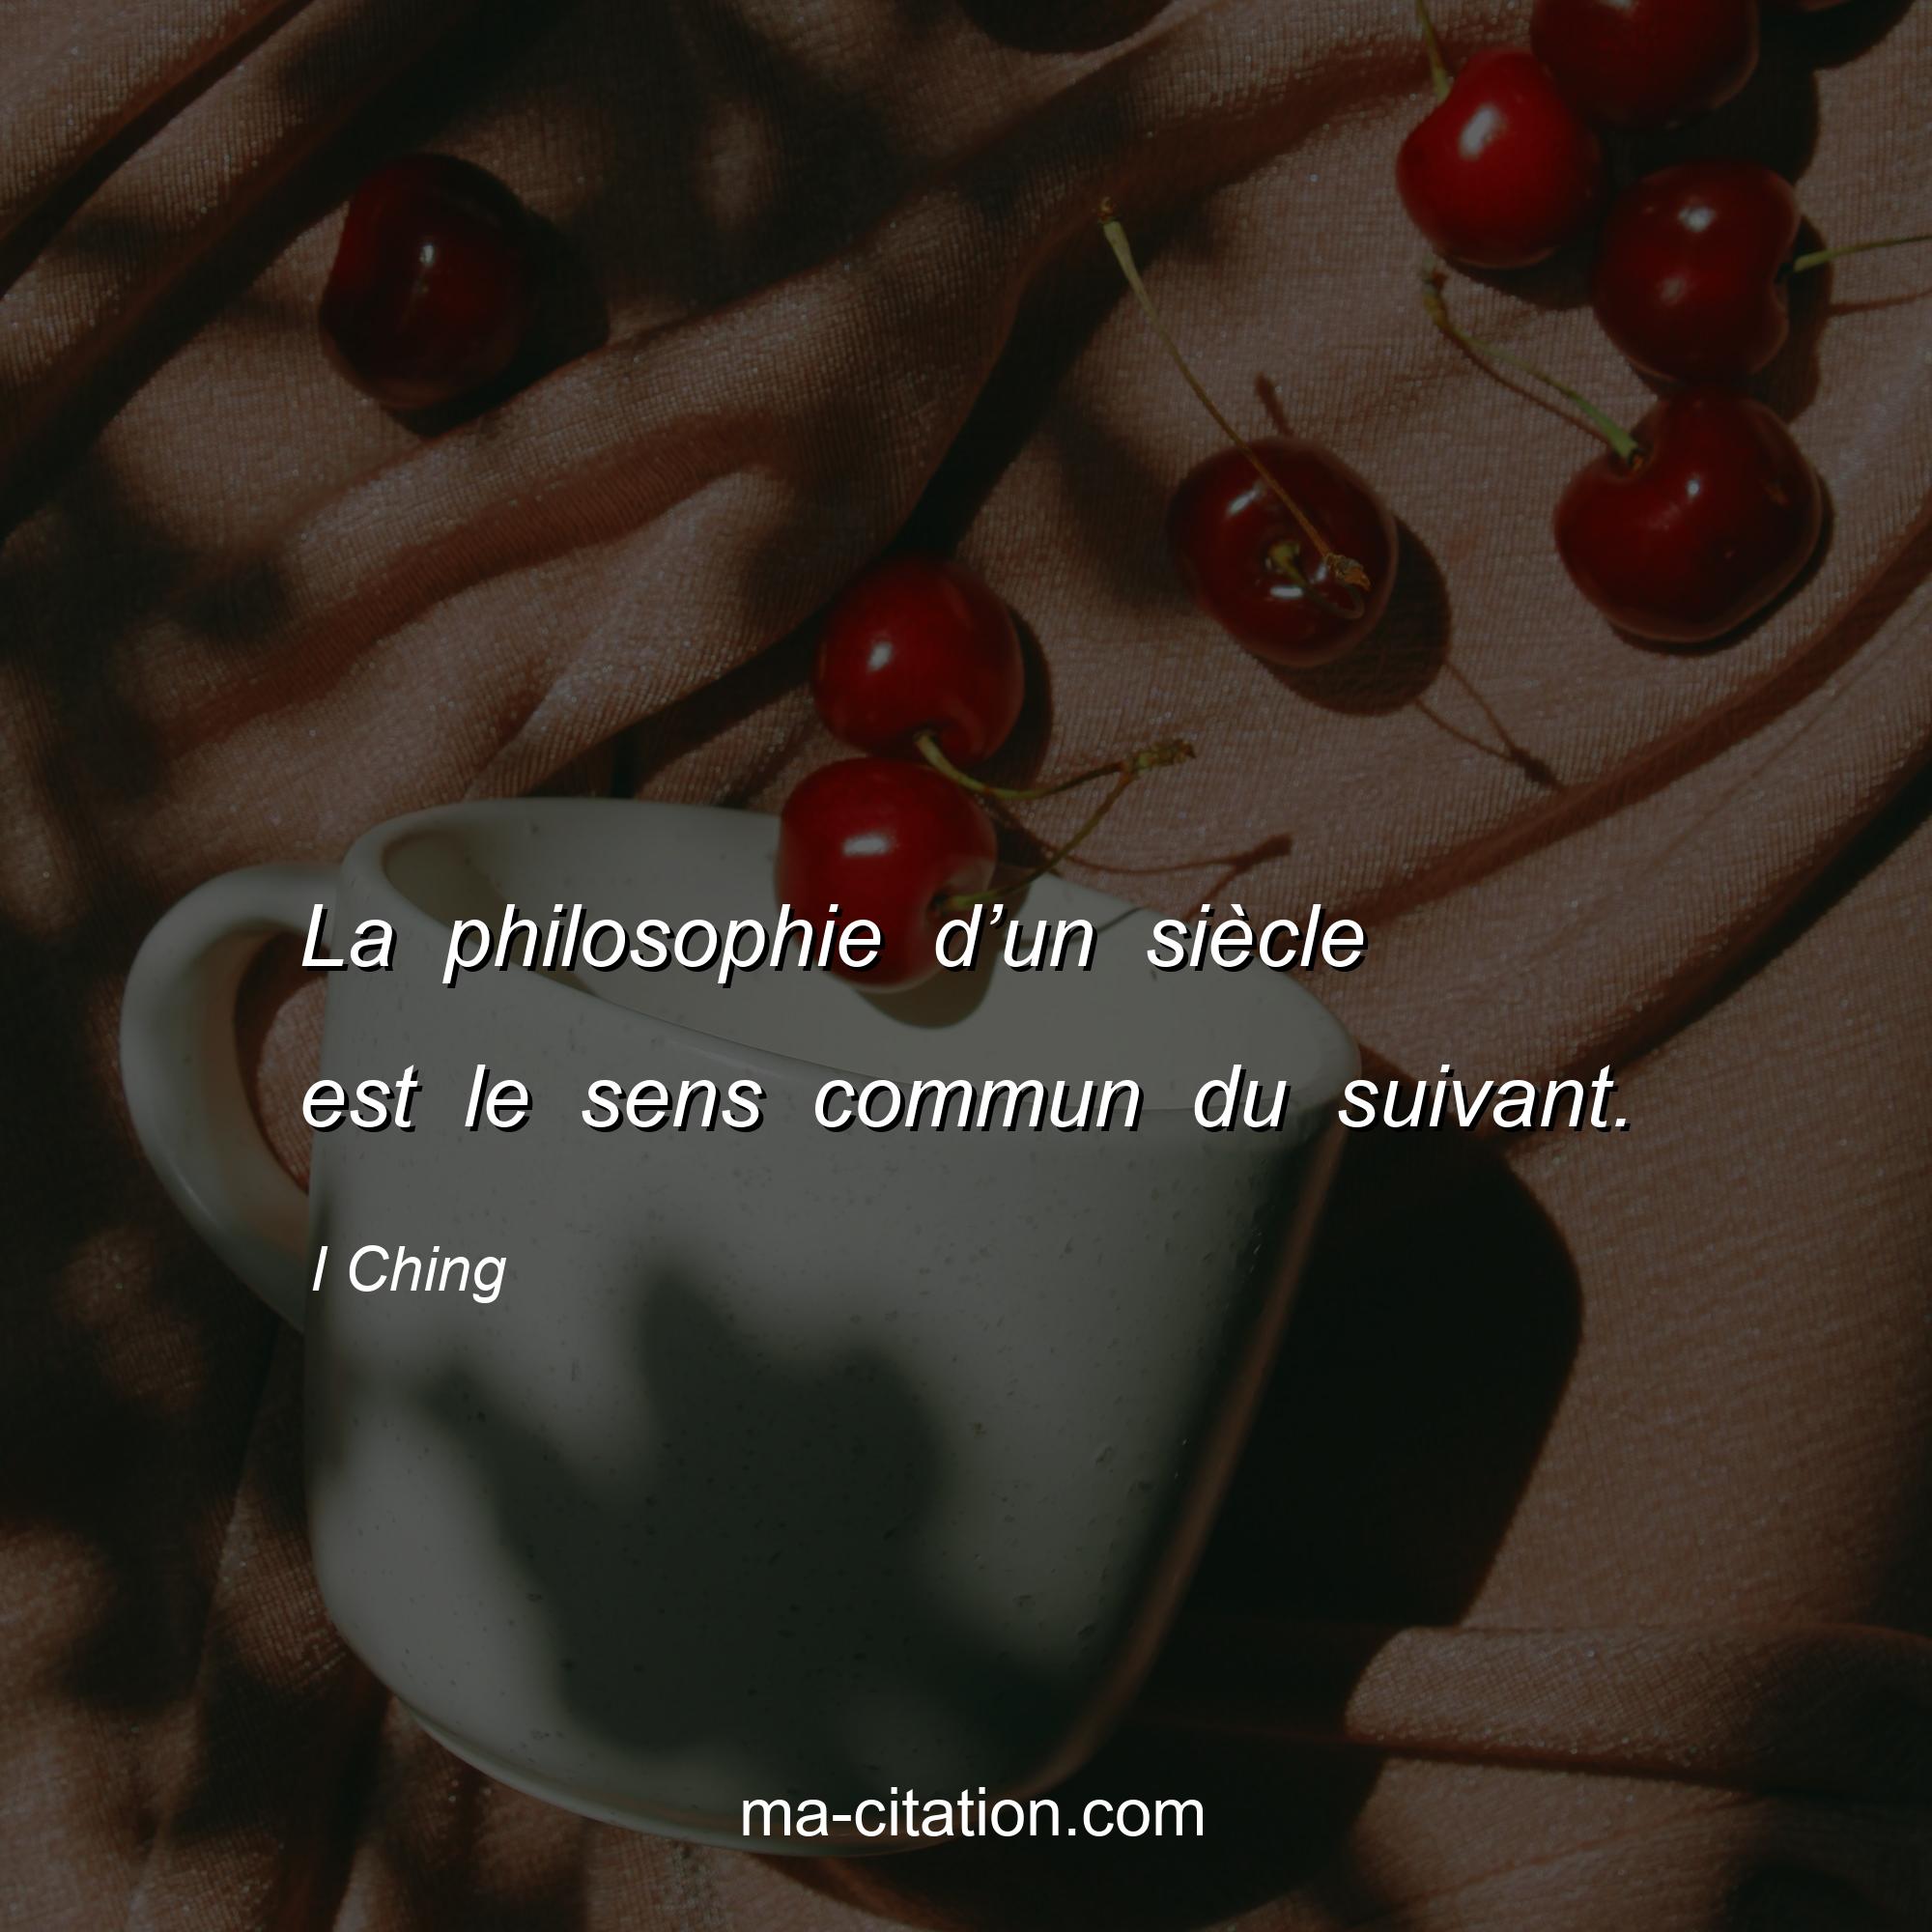 I Ching : La philosophie d’un siècle est le sens commun du suivant.